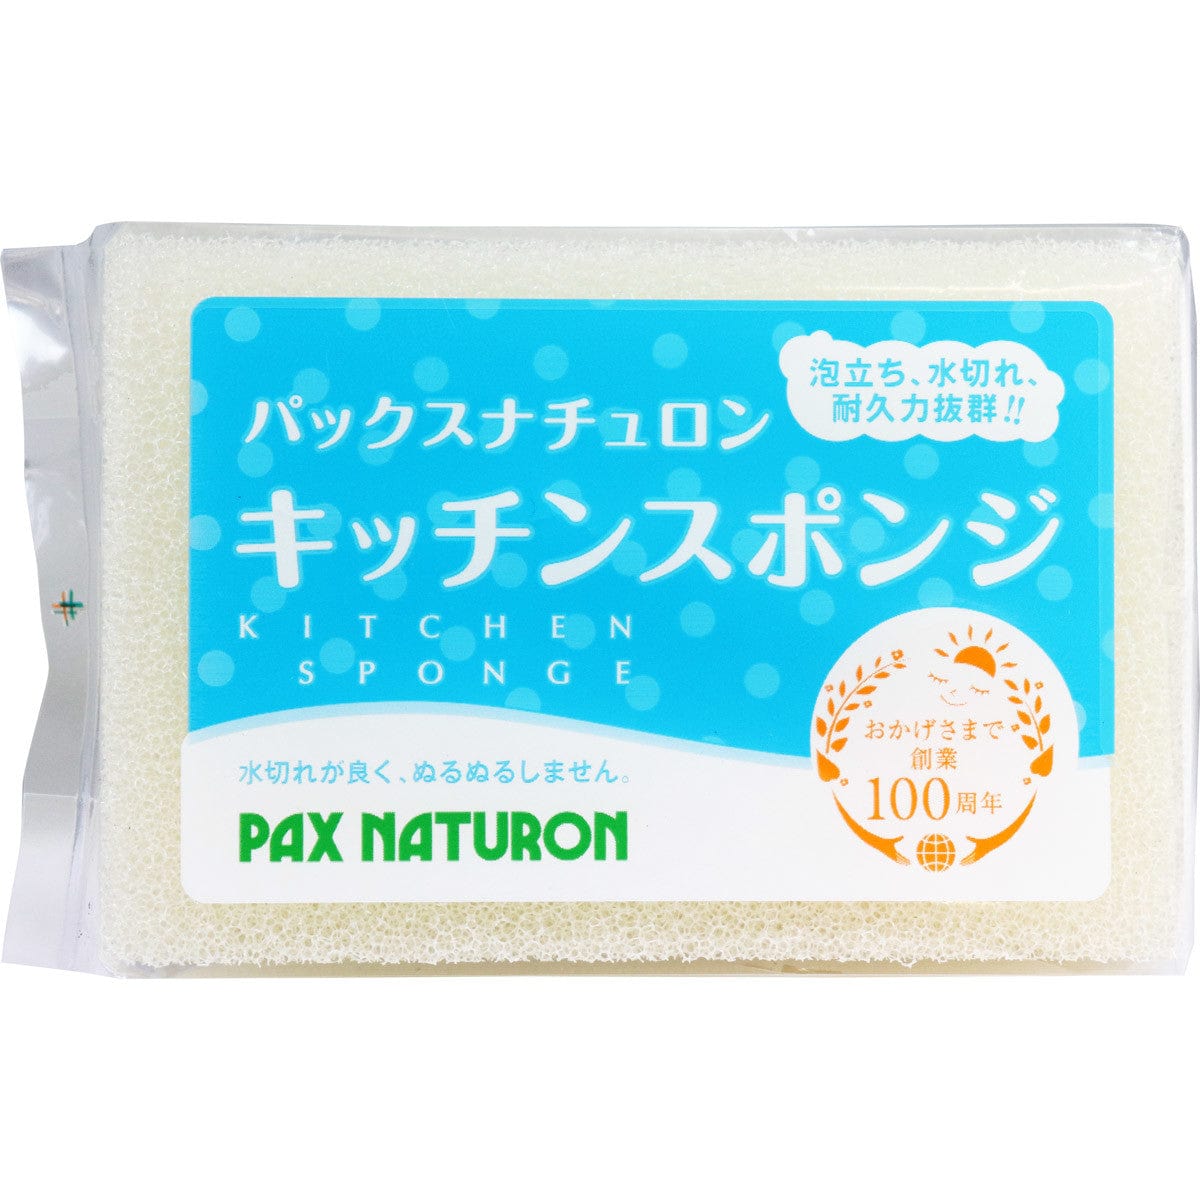 Pax Naturon - Natural Kitchen Sponge OT1242 CherryAffairs